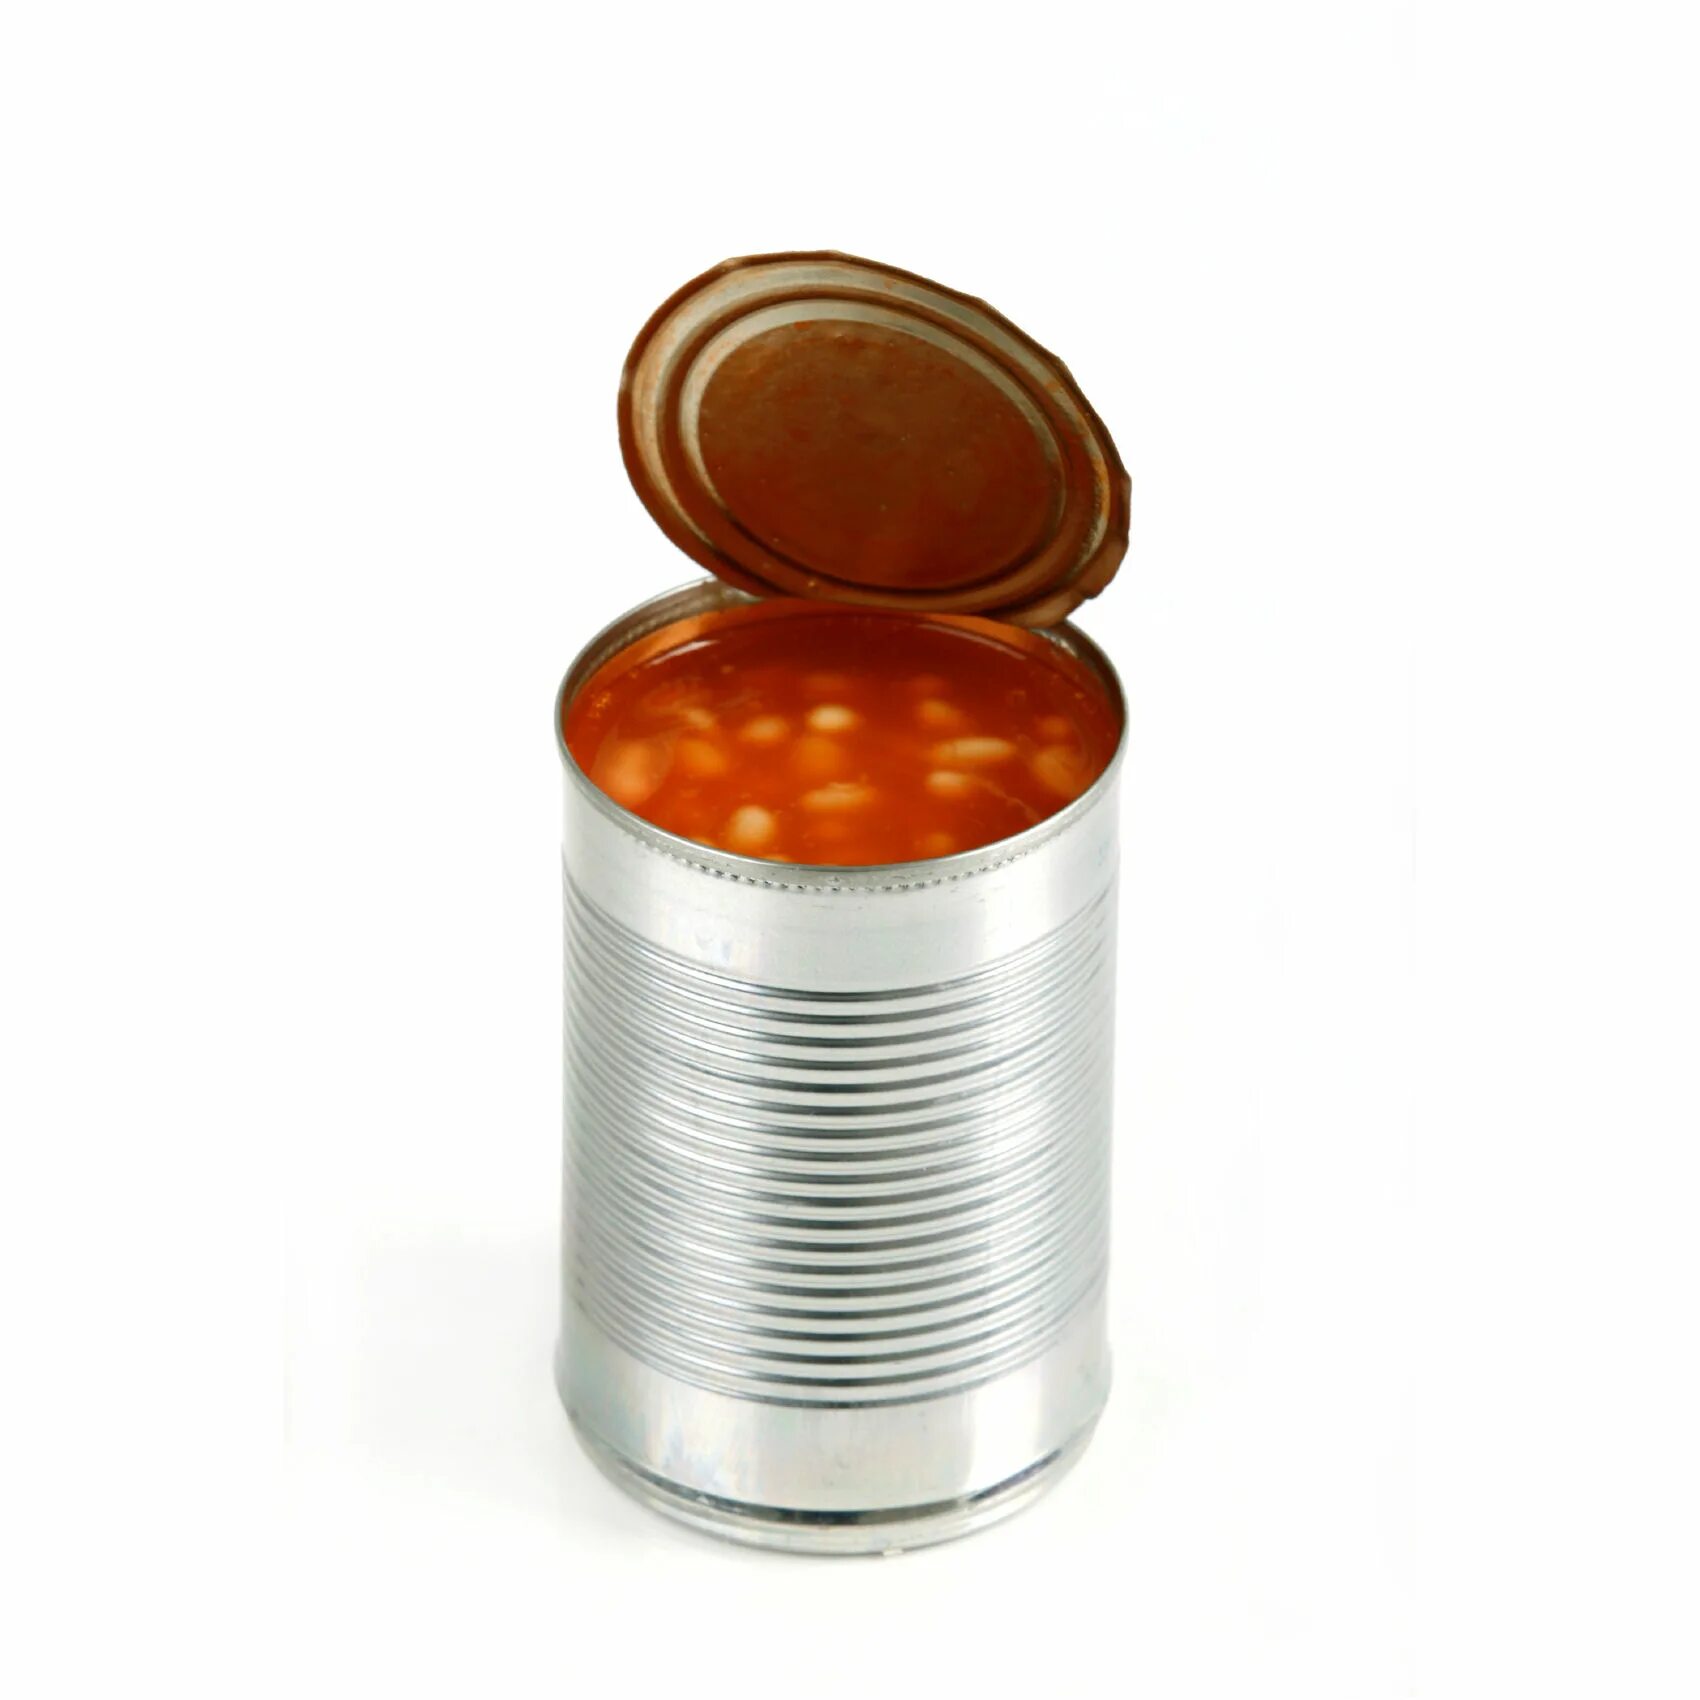 Консервная банка бобов. Железная банка с бобами. Can контейнер. Beans tin can.